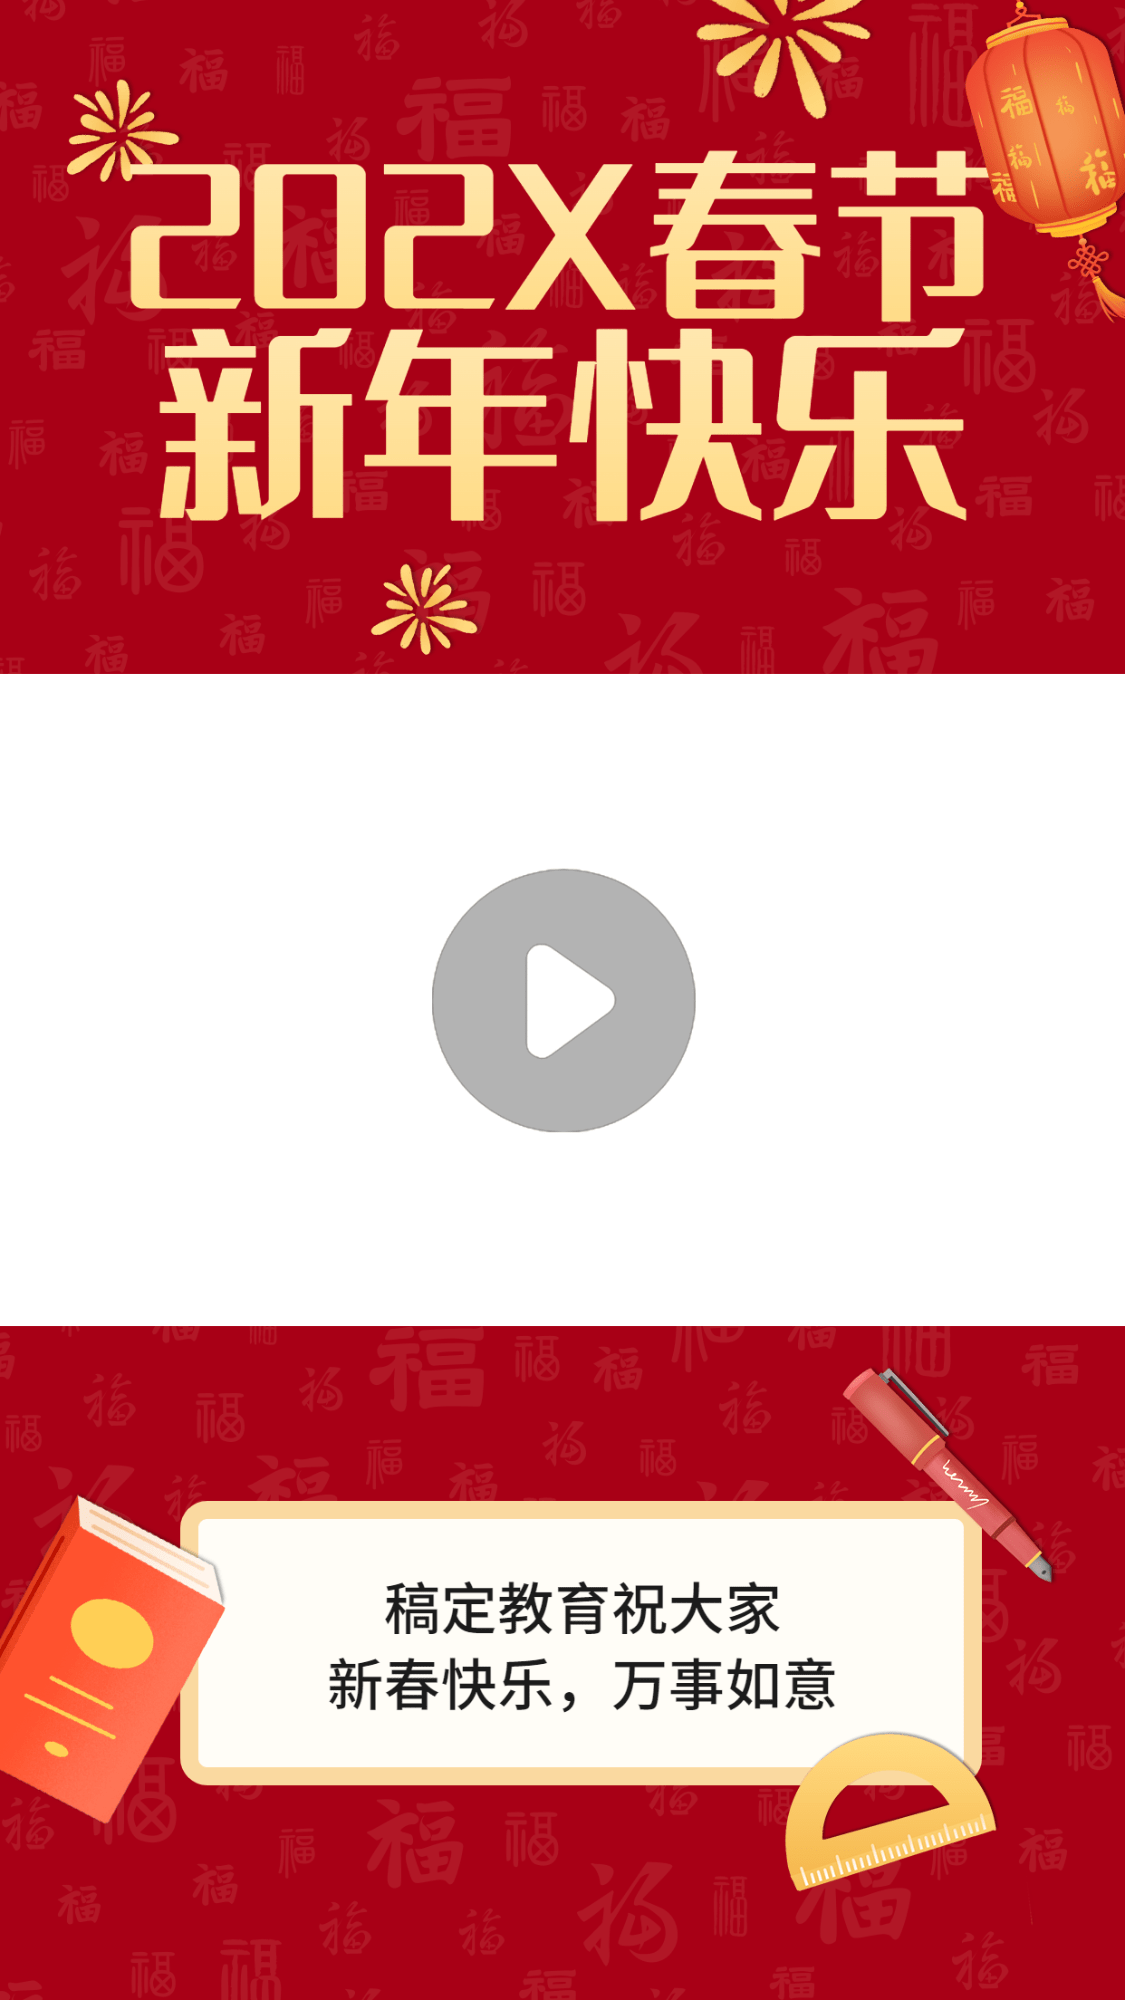 春节祝福宣传视频边框